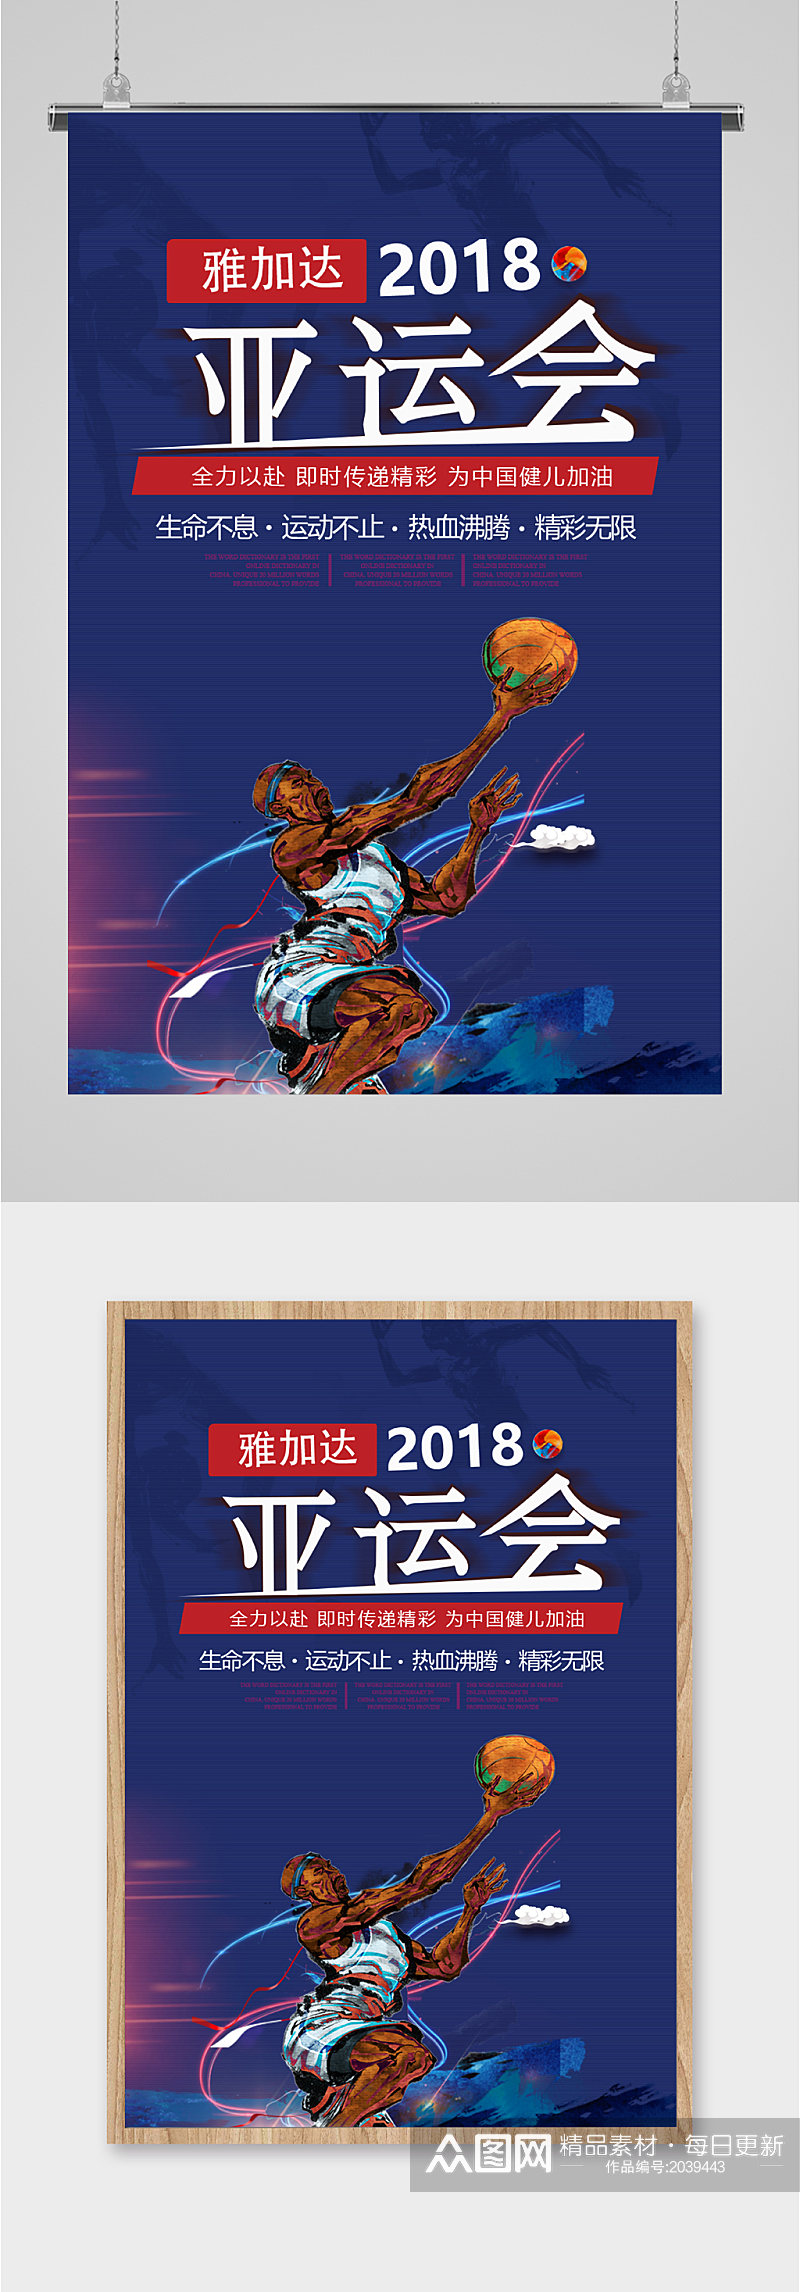 2018亚运会宣传海报素材